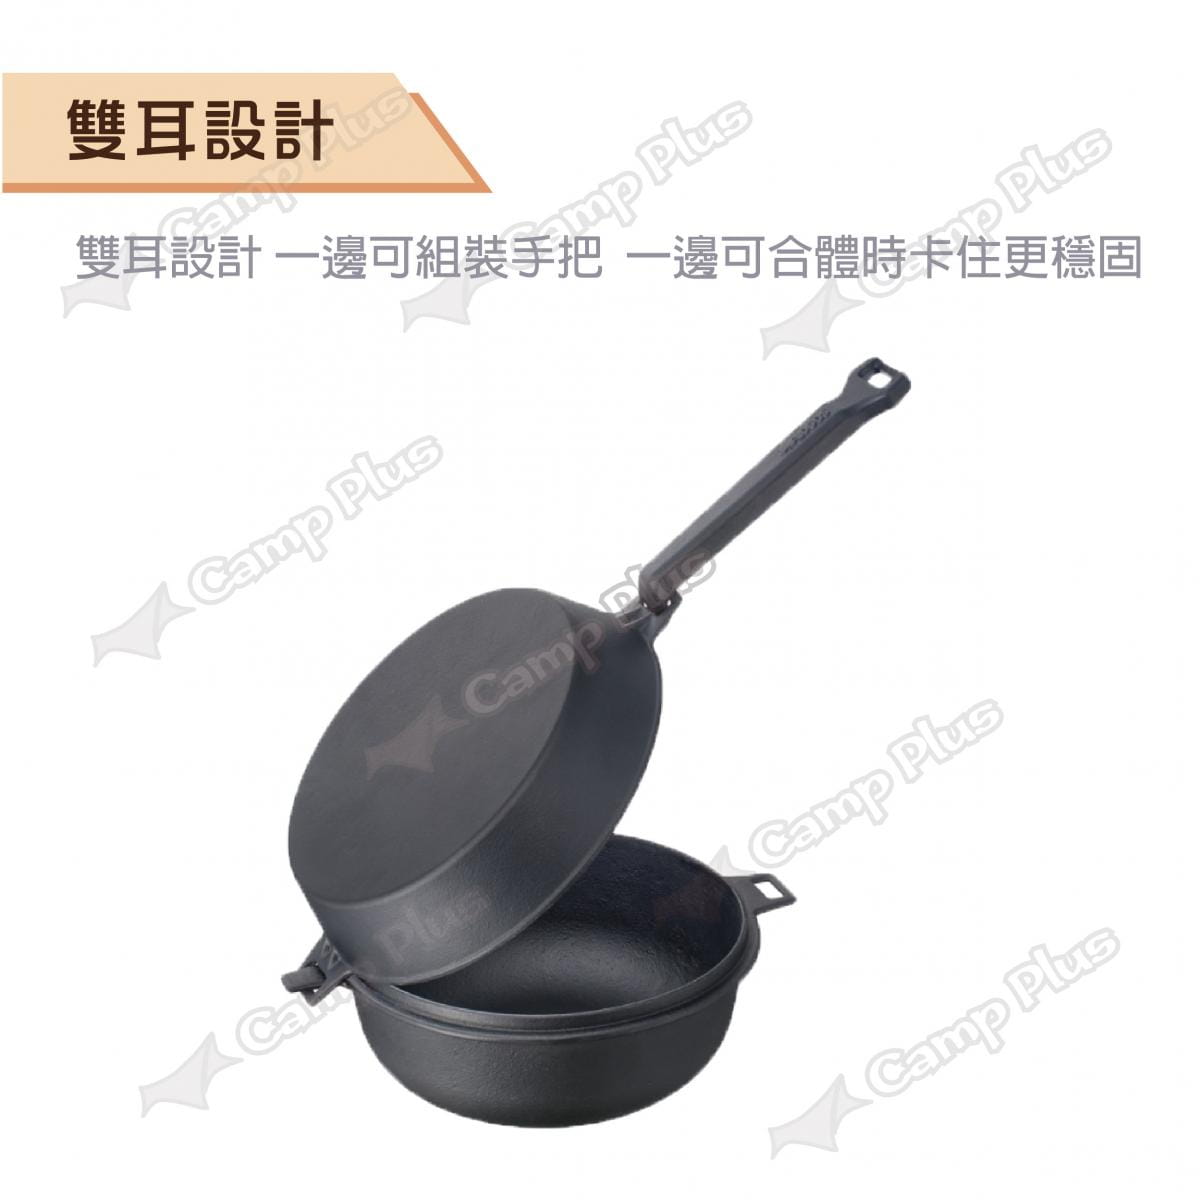 【日本LOGOS】 可合體鑄鐵煎鍋M(22cm)_LG81062235 (悠遊戶外) 2